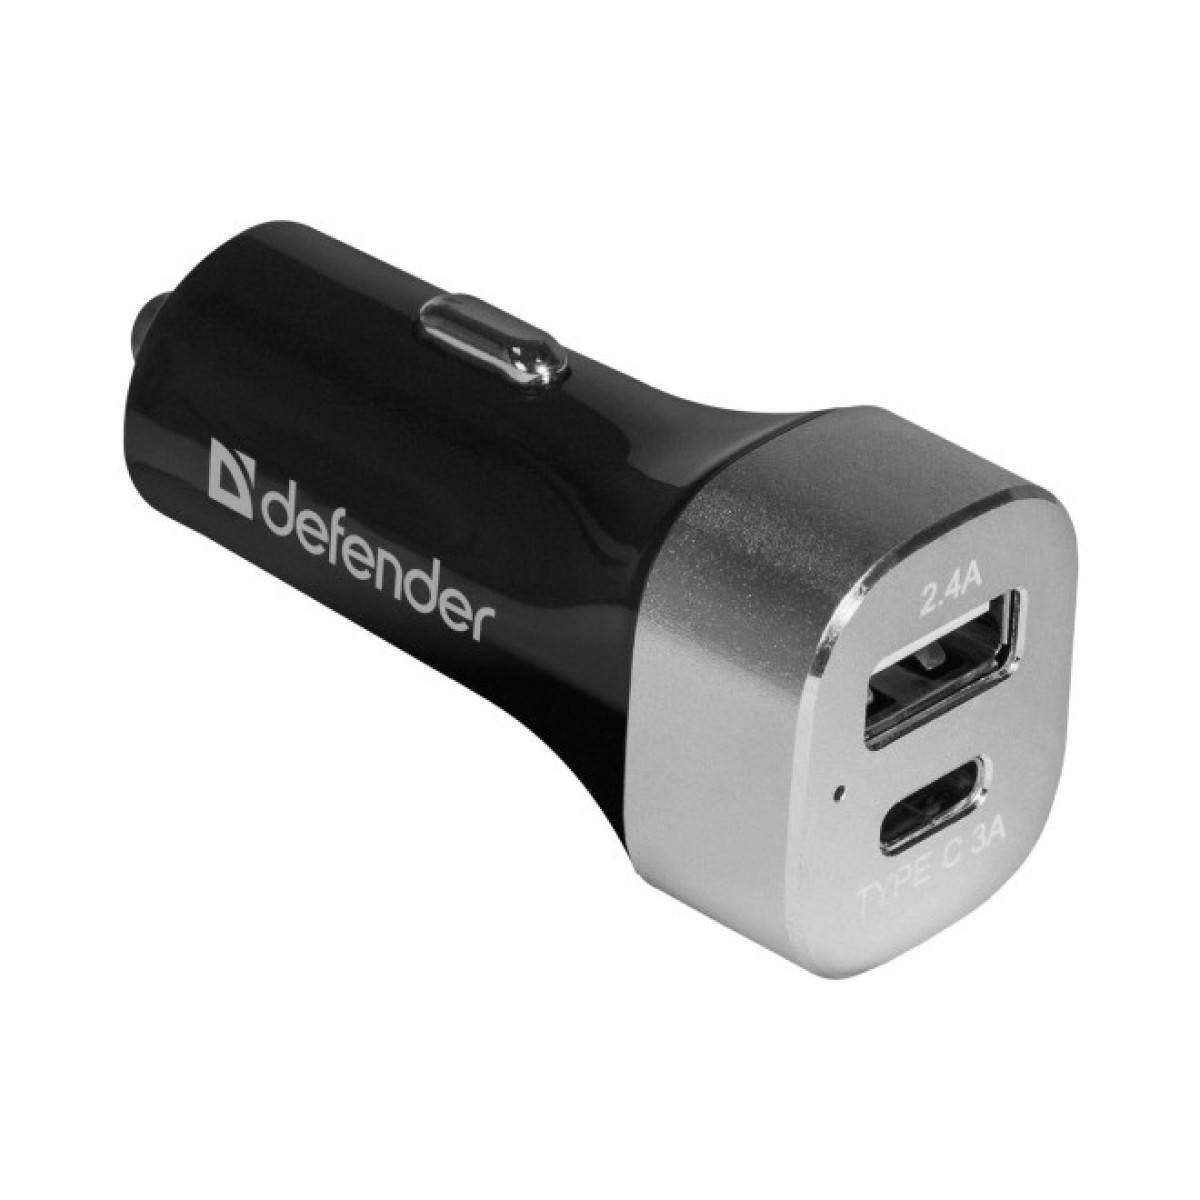 Зарядное устройство Defender UCG-01 авто, 1 порт USB + TypeC, 5V / 5.4A (83569) 256_256.jpg